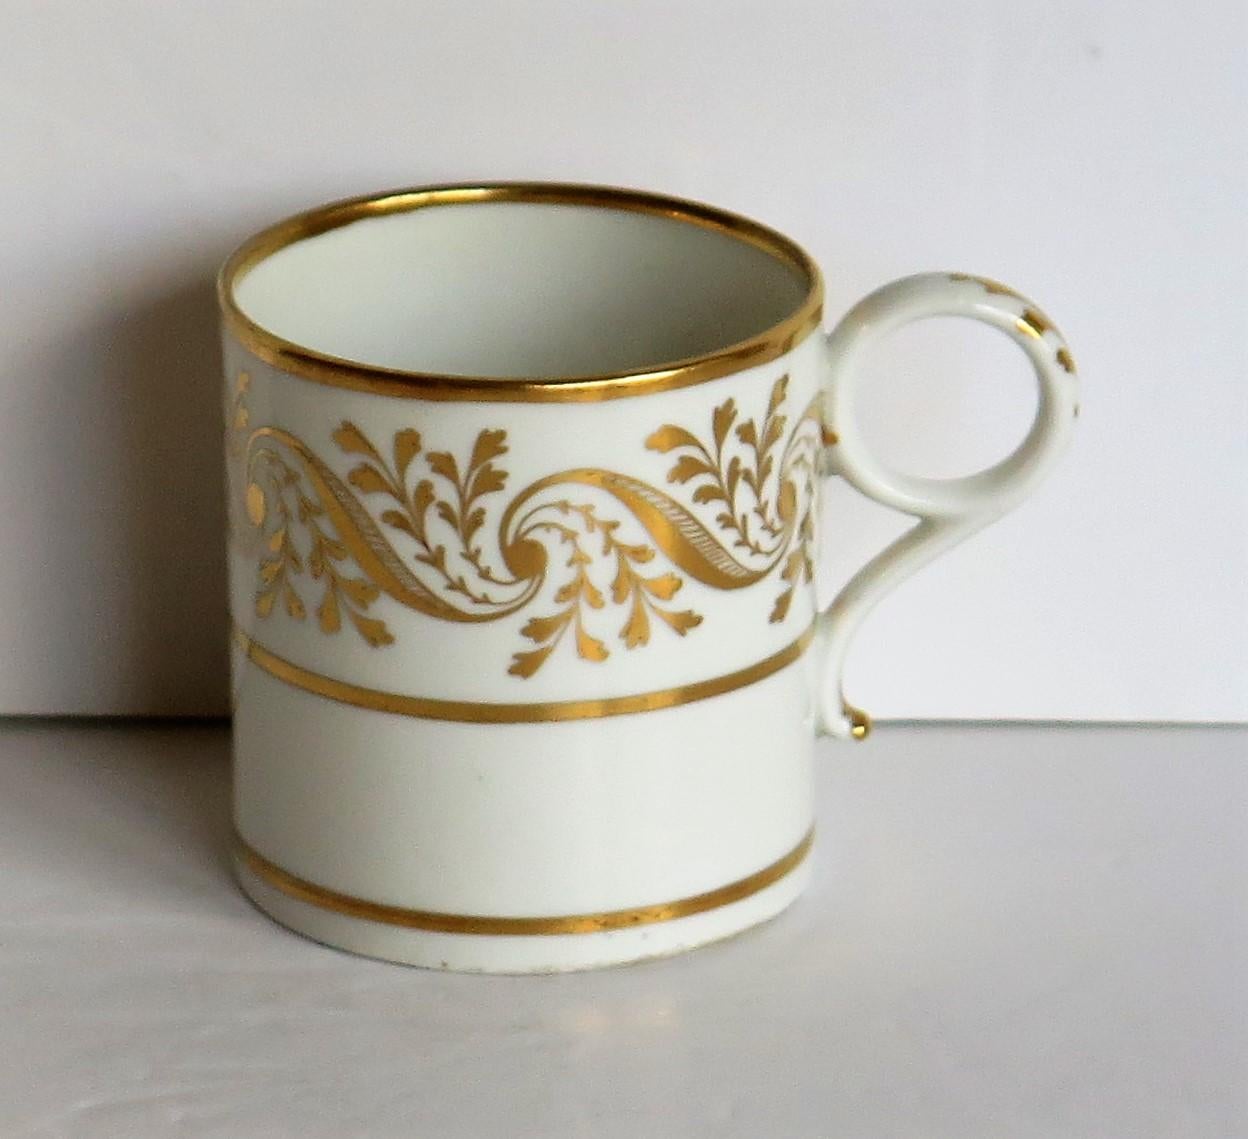 Il s'agit d'une boîte à café de très bonne qualité, au motif doré à la main, fabriquée par Worcester pendant la période Barr, Flight & Barr (BFB) des 111 ans de George, vers 1807-1813.

La boîte à café est bien empotée et nominalement parallèle,